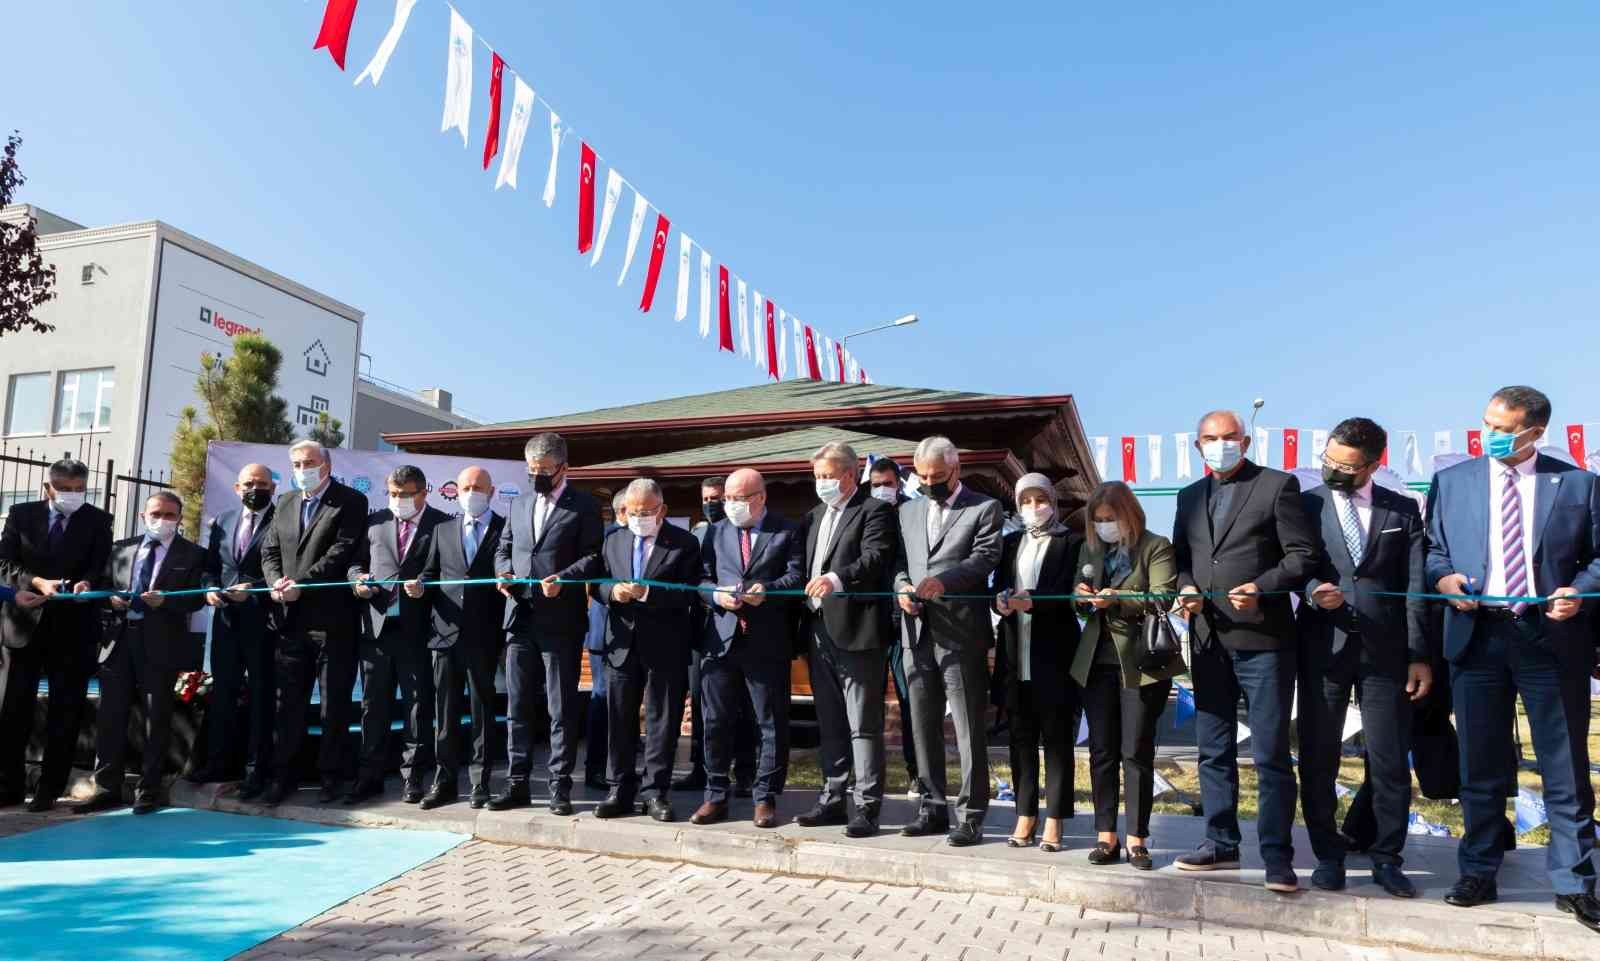 Kayseri Üniversitesinin de Paydaş Olduğu ’Kayseri Kariyer Merkezinin’ Açılışı Yapıldı #kayseri